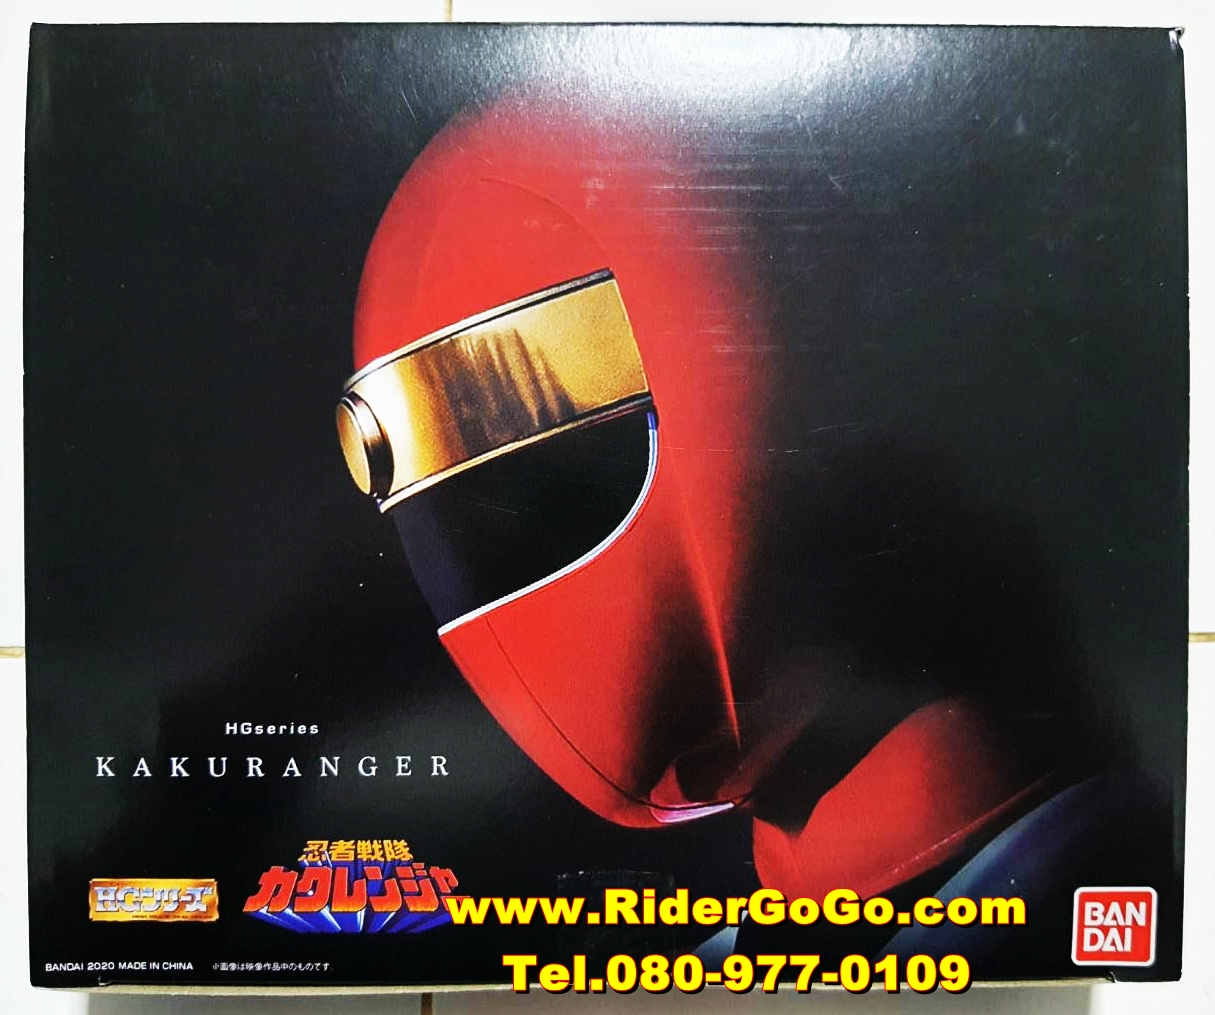 โมเดลคาคุเรนเจอร์ ขบวนการนินจาคาคุเรนเจอร์ Gashapon HG Ninja Sentai Kakuranger ของใหม่ของแท้ Bandai ประเทศญี่ปุ่น รูปที่ 1